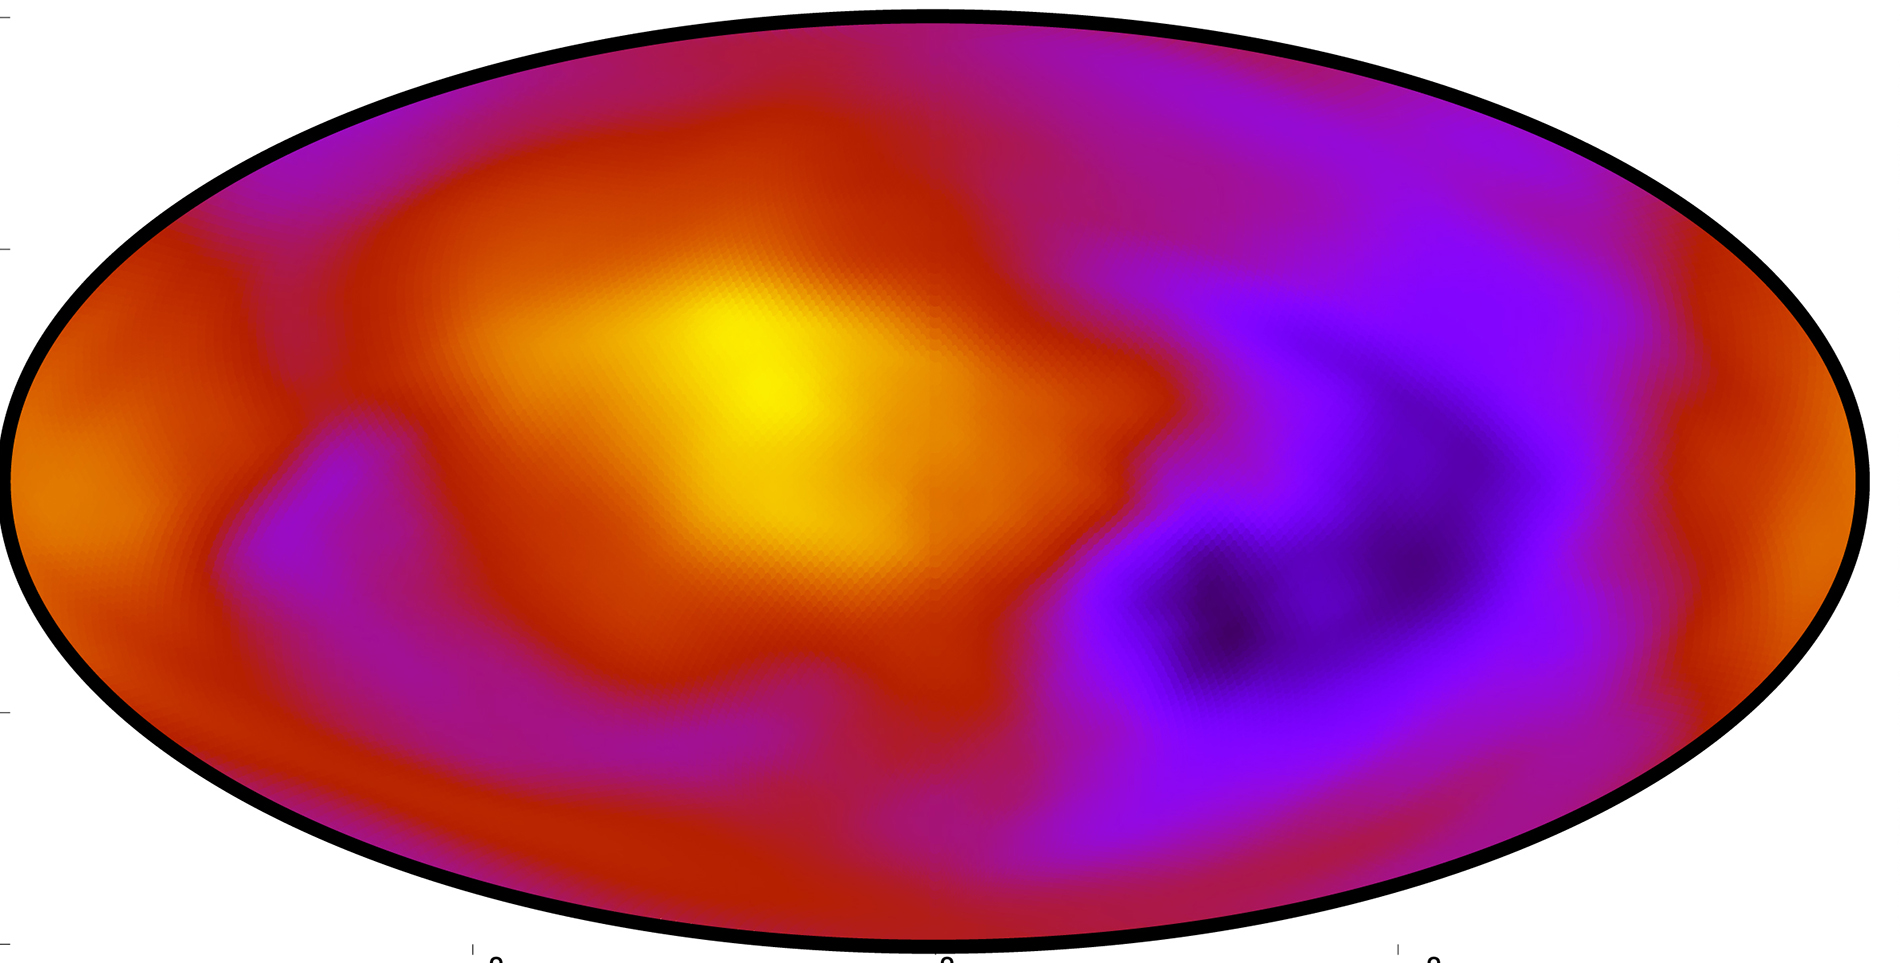 El mapa muestra en diferentes colores la tasa de expansión del Universo: el morado indica la tasa más lenta  y los tonos naranja y amarillo la tasa más rápida. Crédito: K. Migkas et al. 2020, CC BY-SA 3.0 IGO.